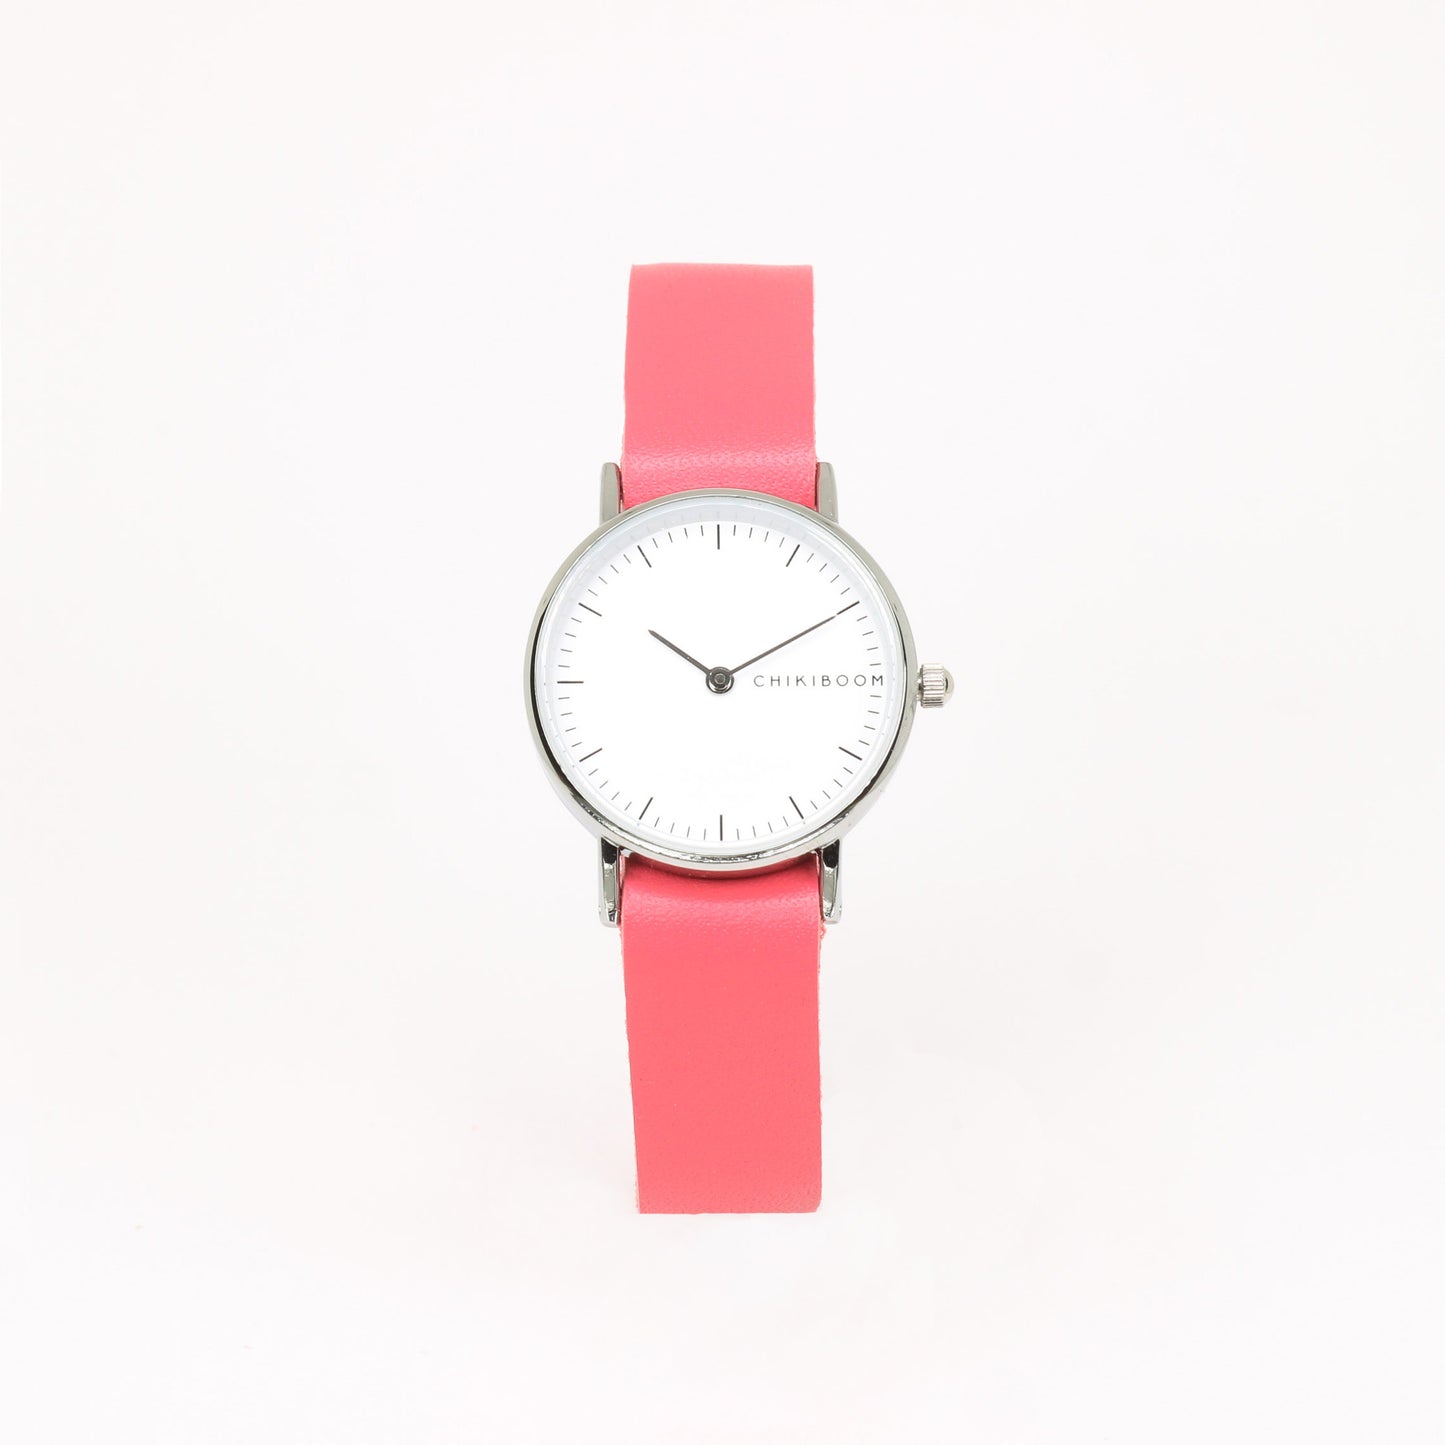 Flash pink / white women's watch